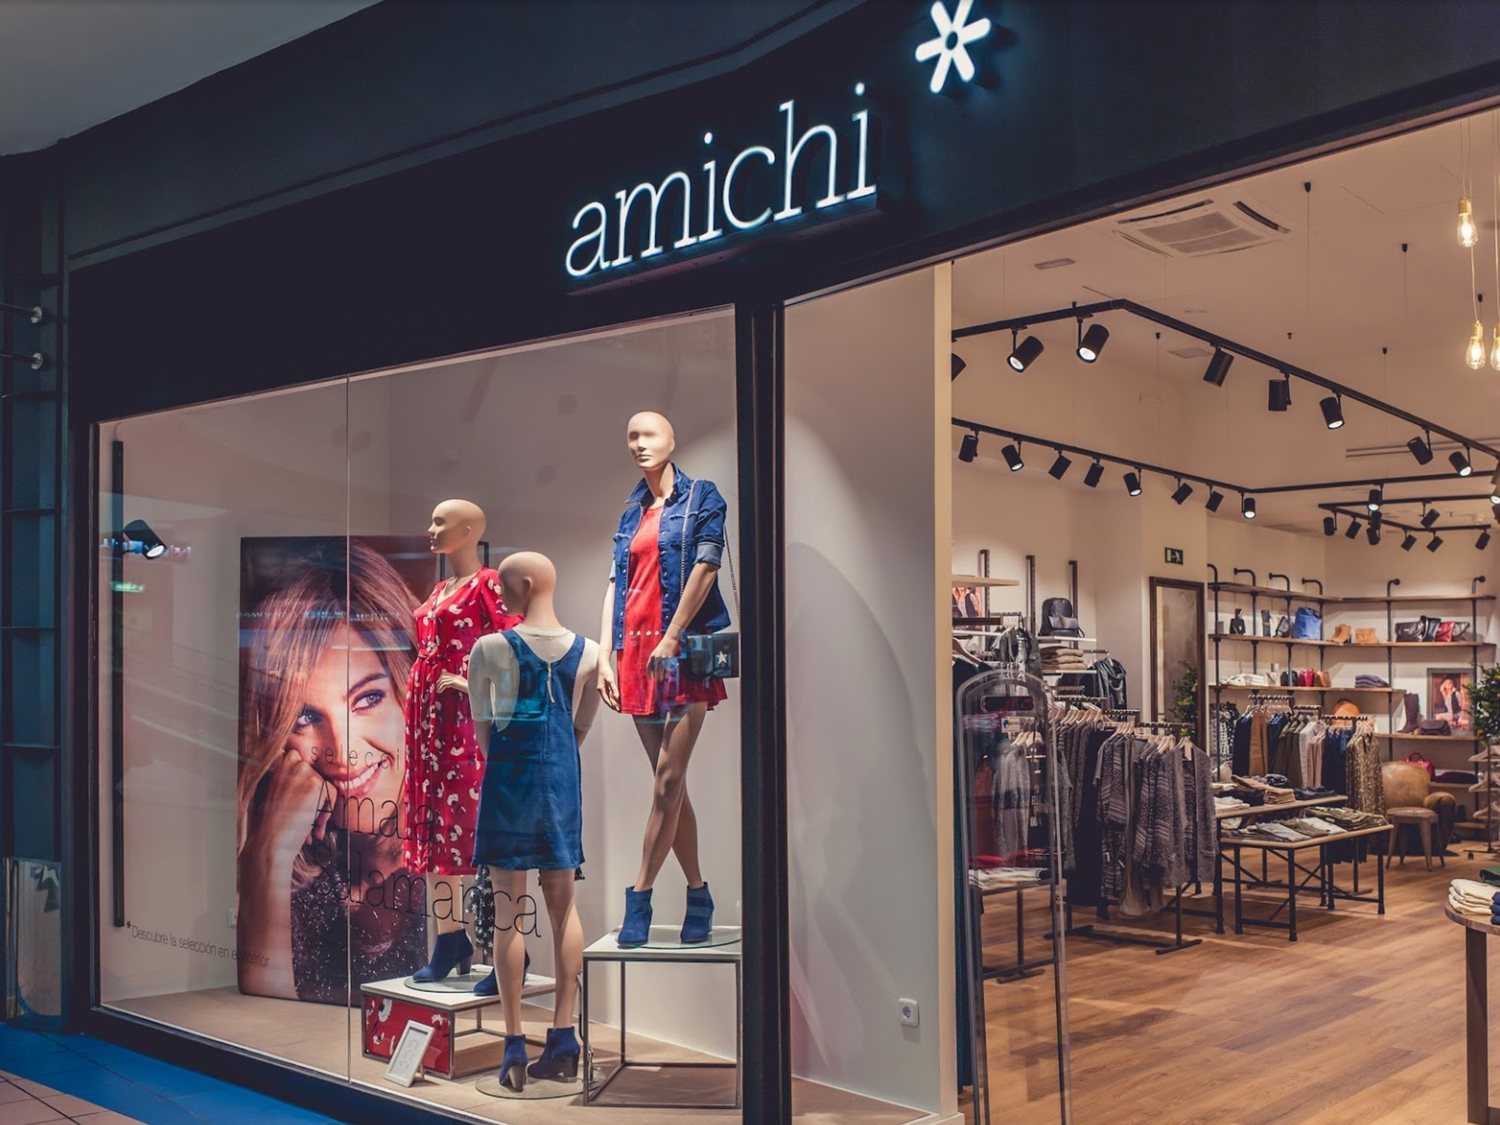 La marca de moda española Amichi, al borde del abismo: cierre de tiendas y un nuevo ERE